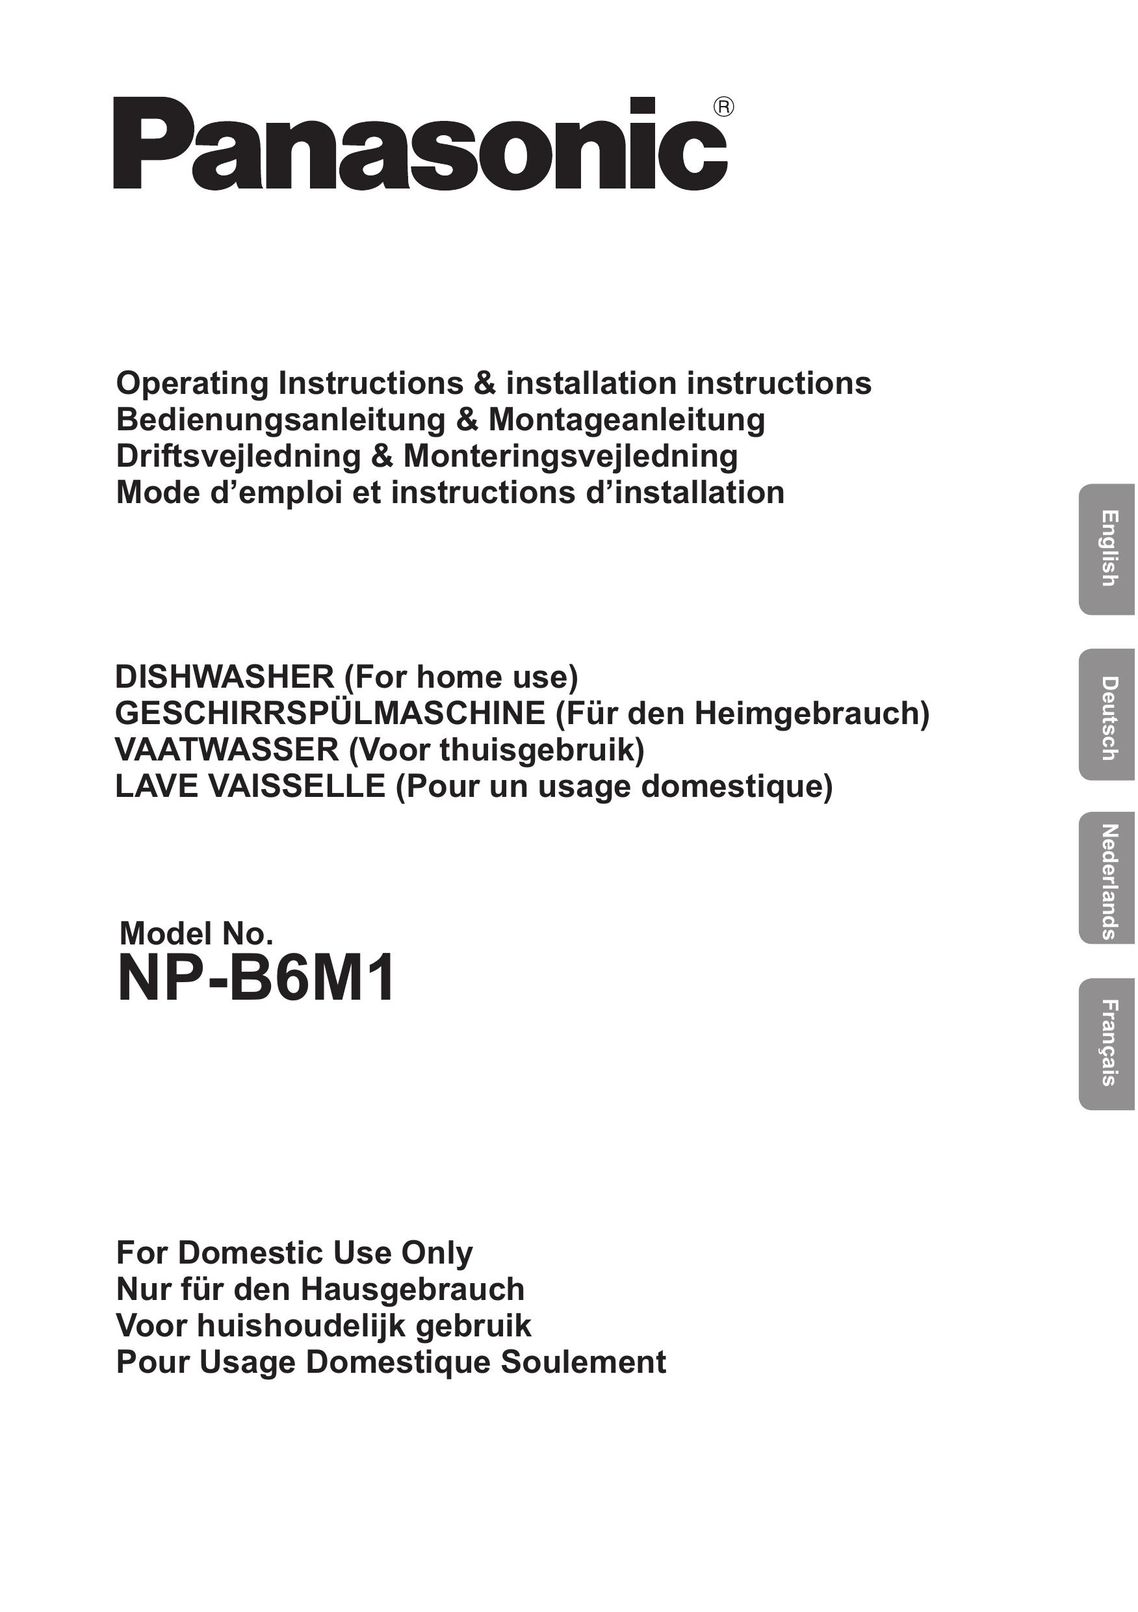 Panasonic NP-B6M1 Dishwasher User Manual